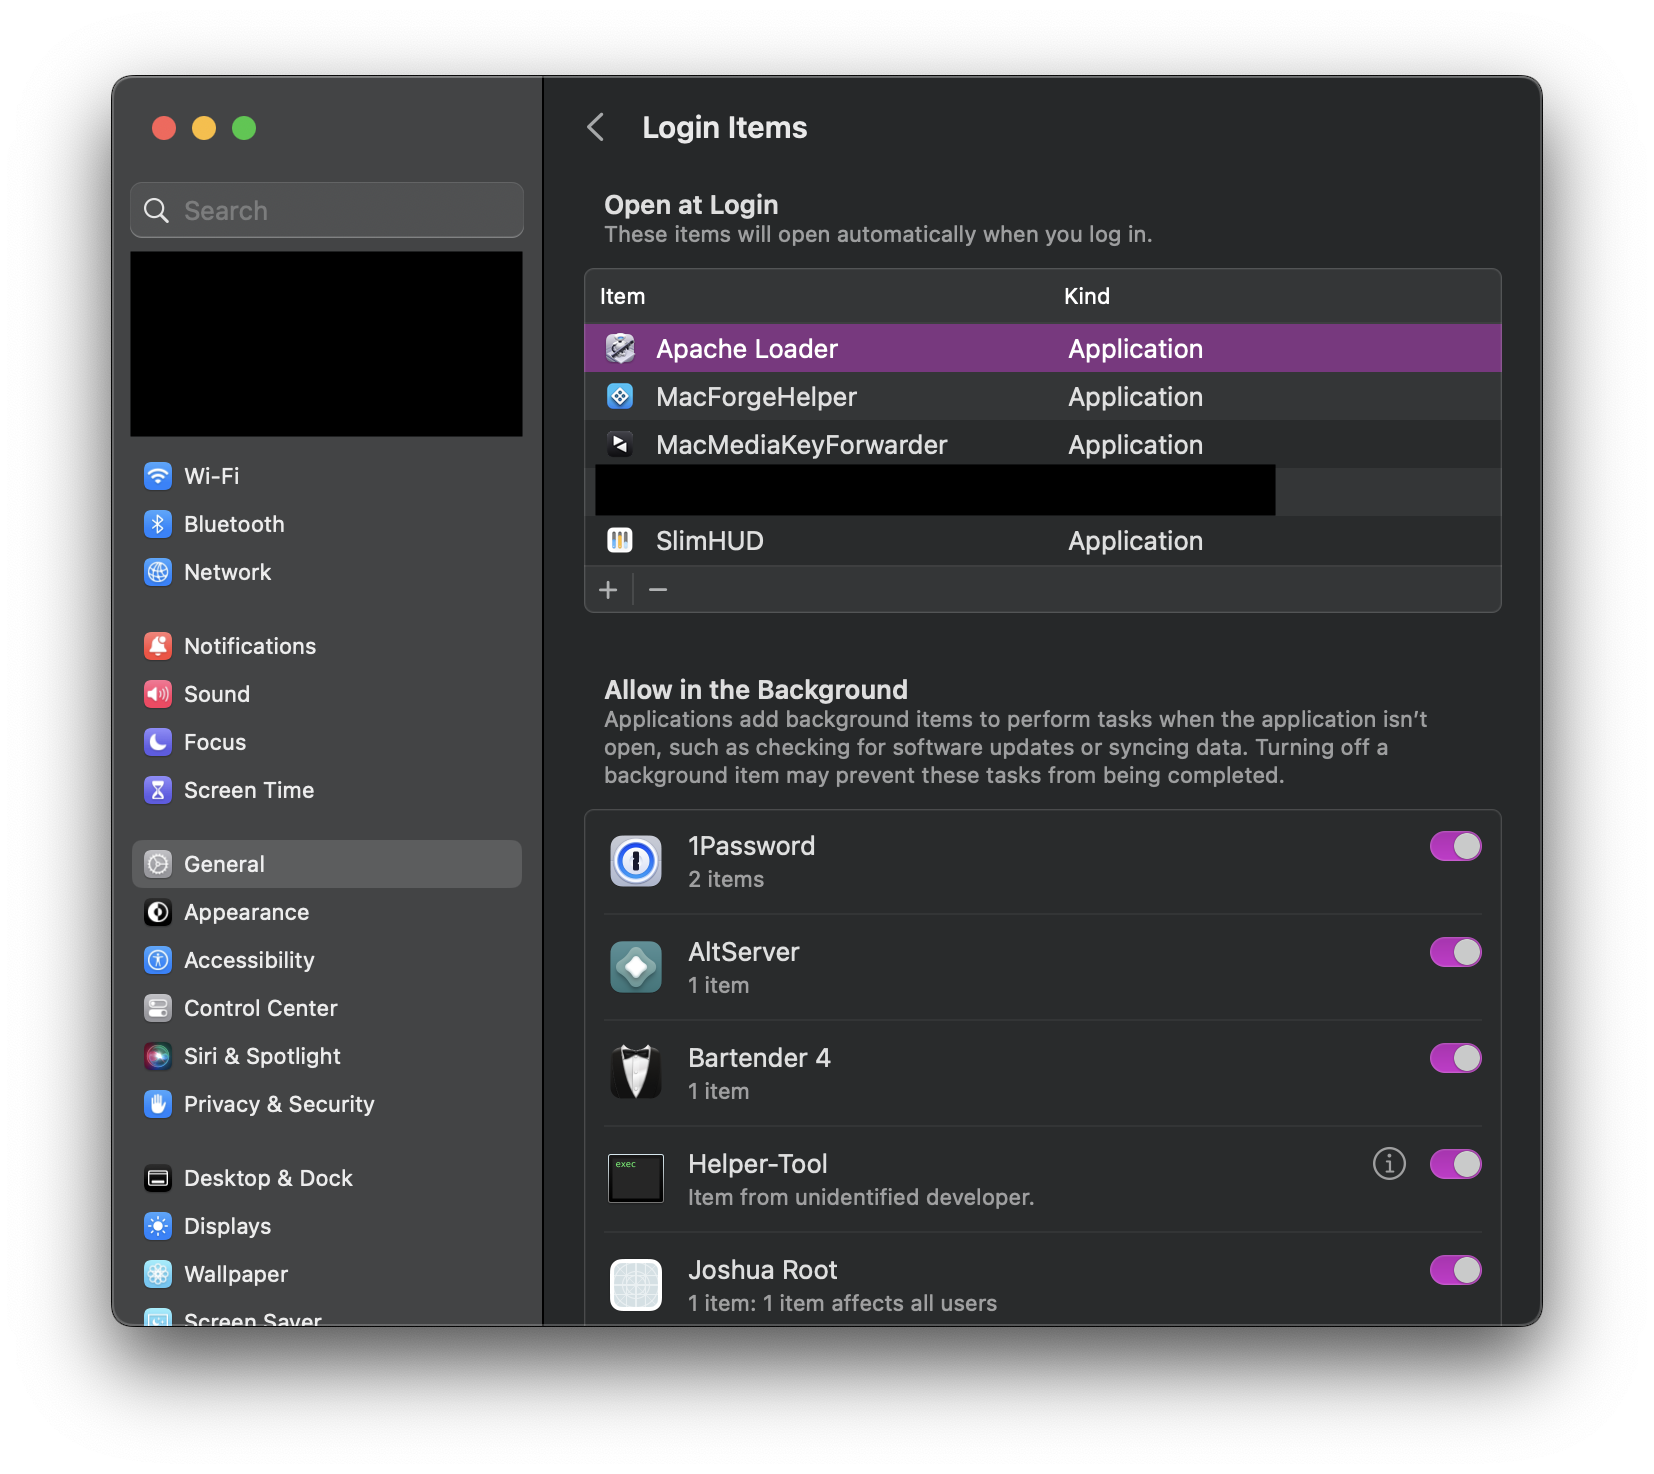 macOS Login Items settings